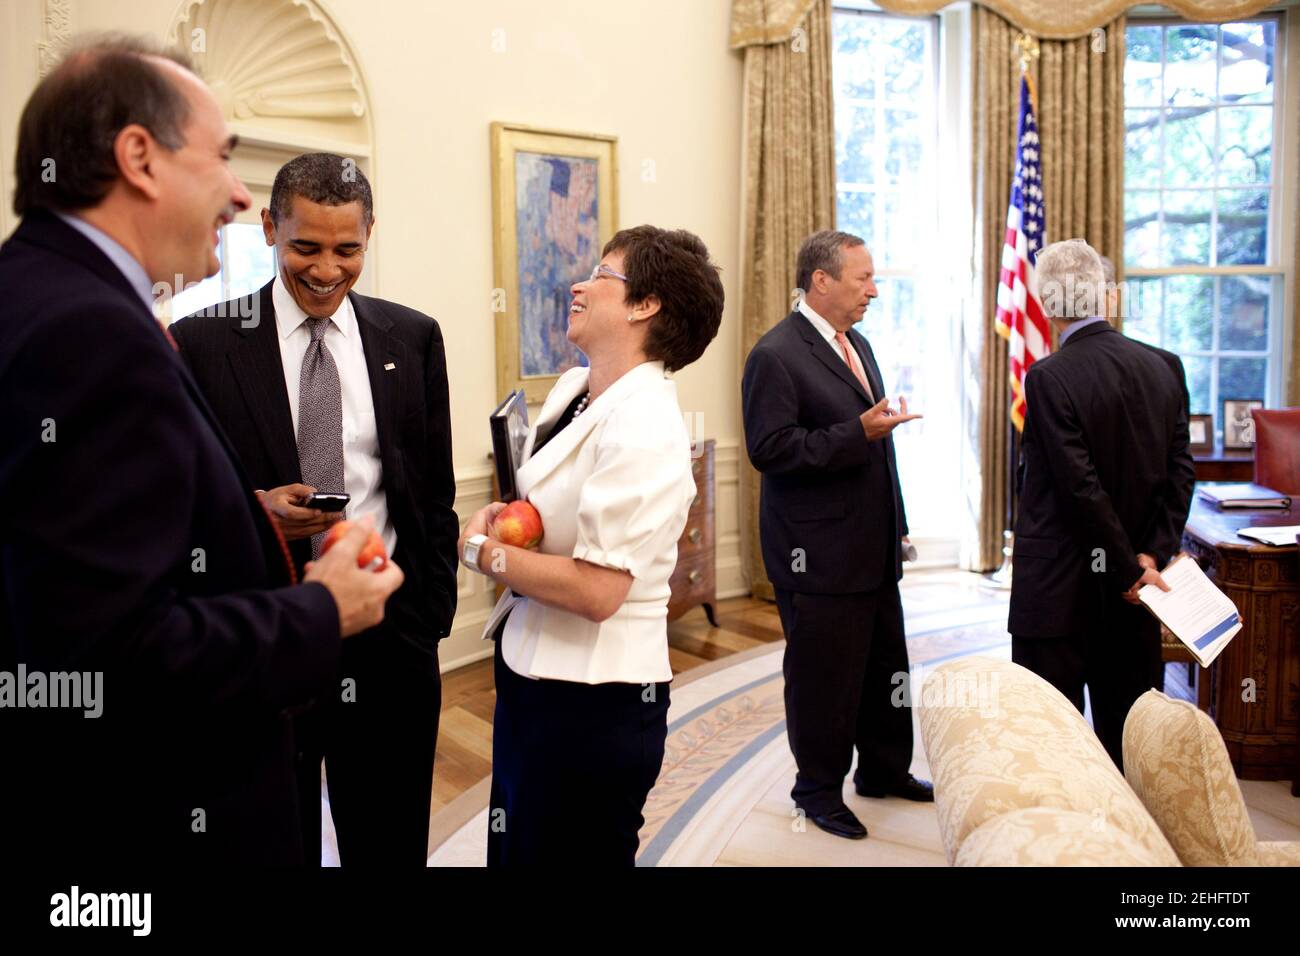 Il presidente Barack Obama ride con i consulenti senior David Axelrod e Valerie Jarrett nell'ufficio ovale dopo il Presidential Daily Briefing il 10 giugno 2009. Foto Stock